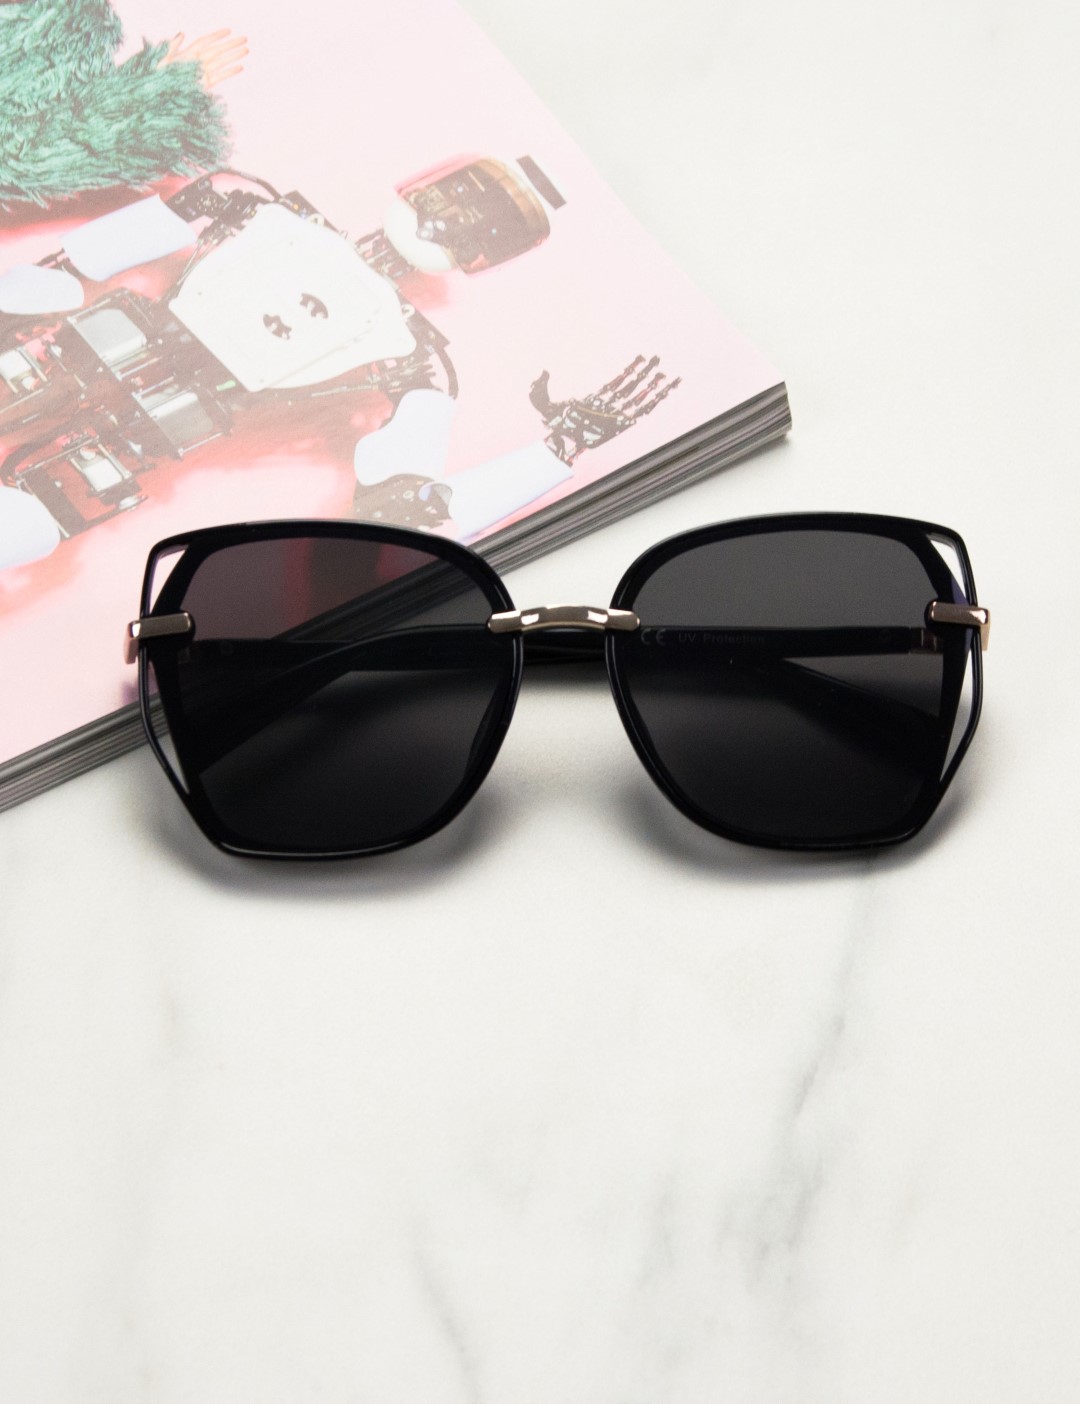 Γυναικεία μαύρα πολυγωνικά γυαλιά ηλίου με κοκκάλινο σκελετό Premium S1110